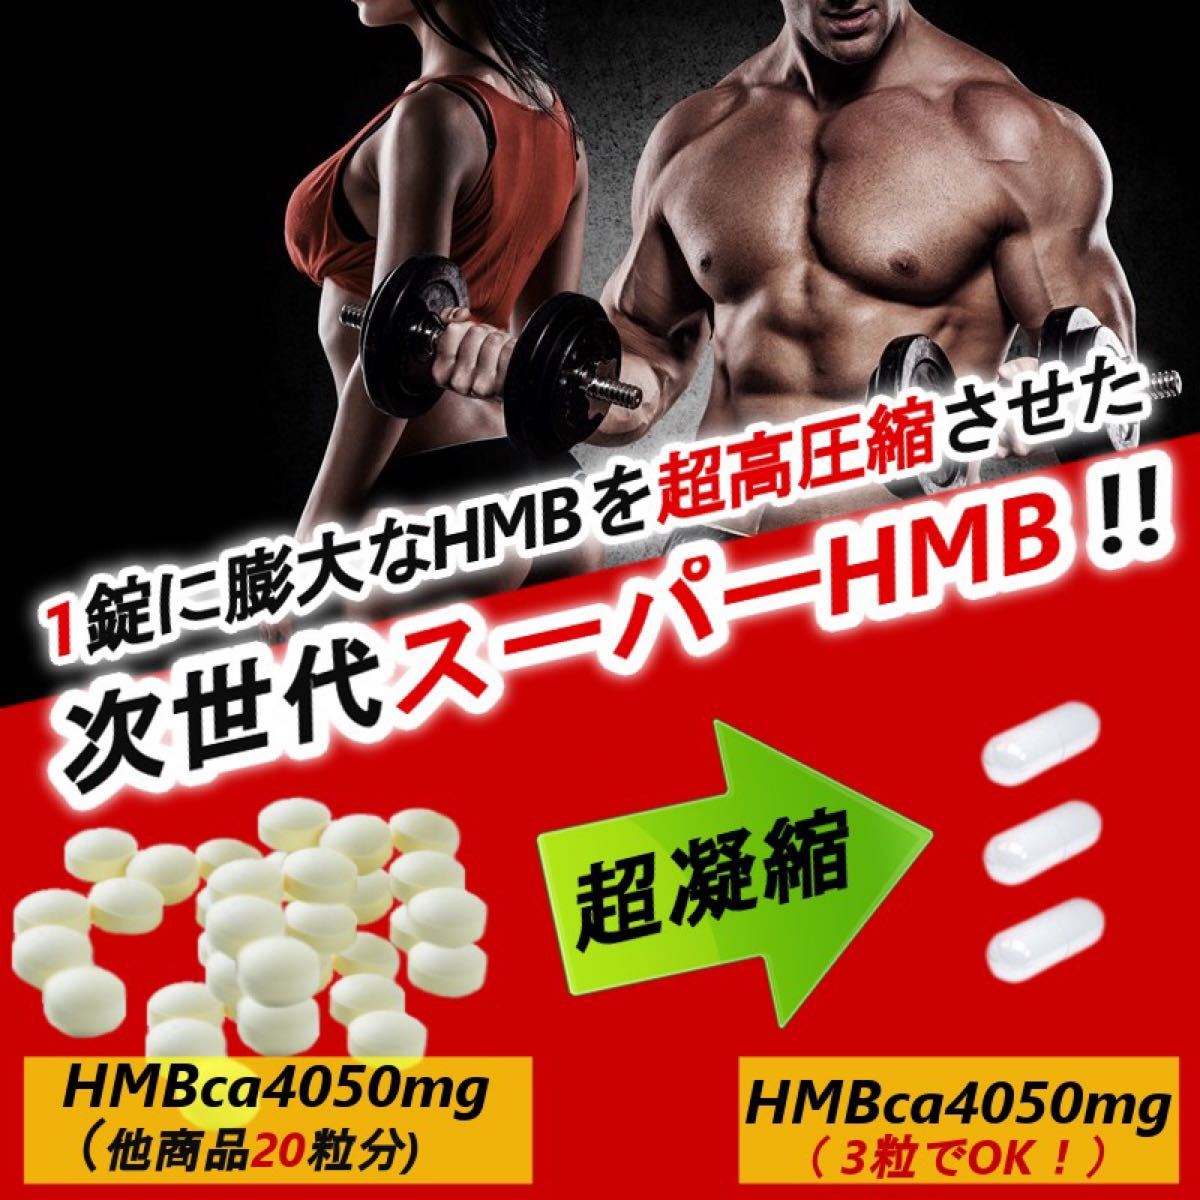 8万mg超 鍛神 ファイラマッスル2袋弱分超HMB含有量 サプリ REVODY